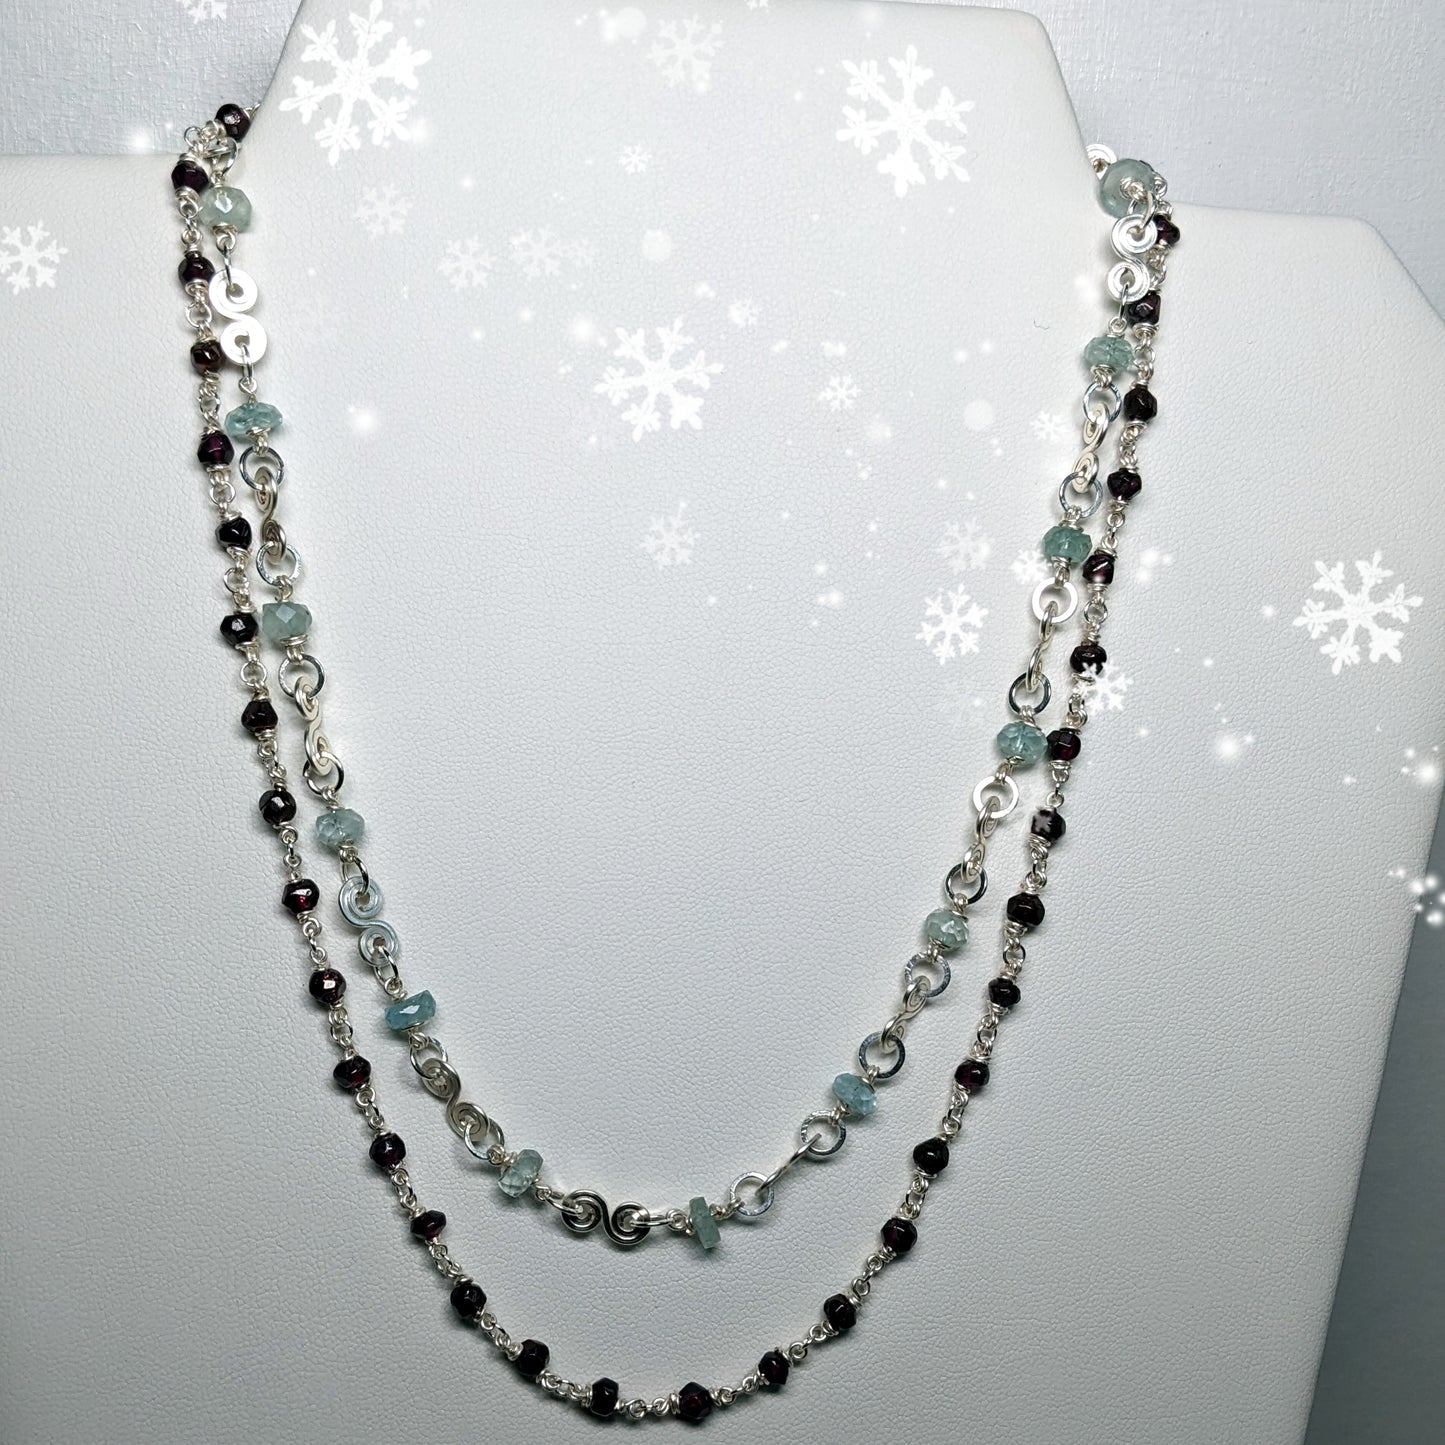 Aquamarine Garnet necklace